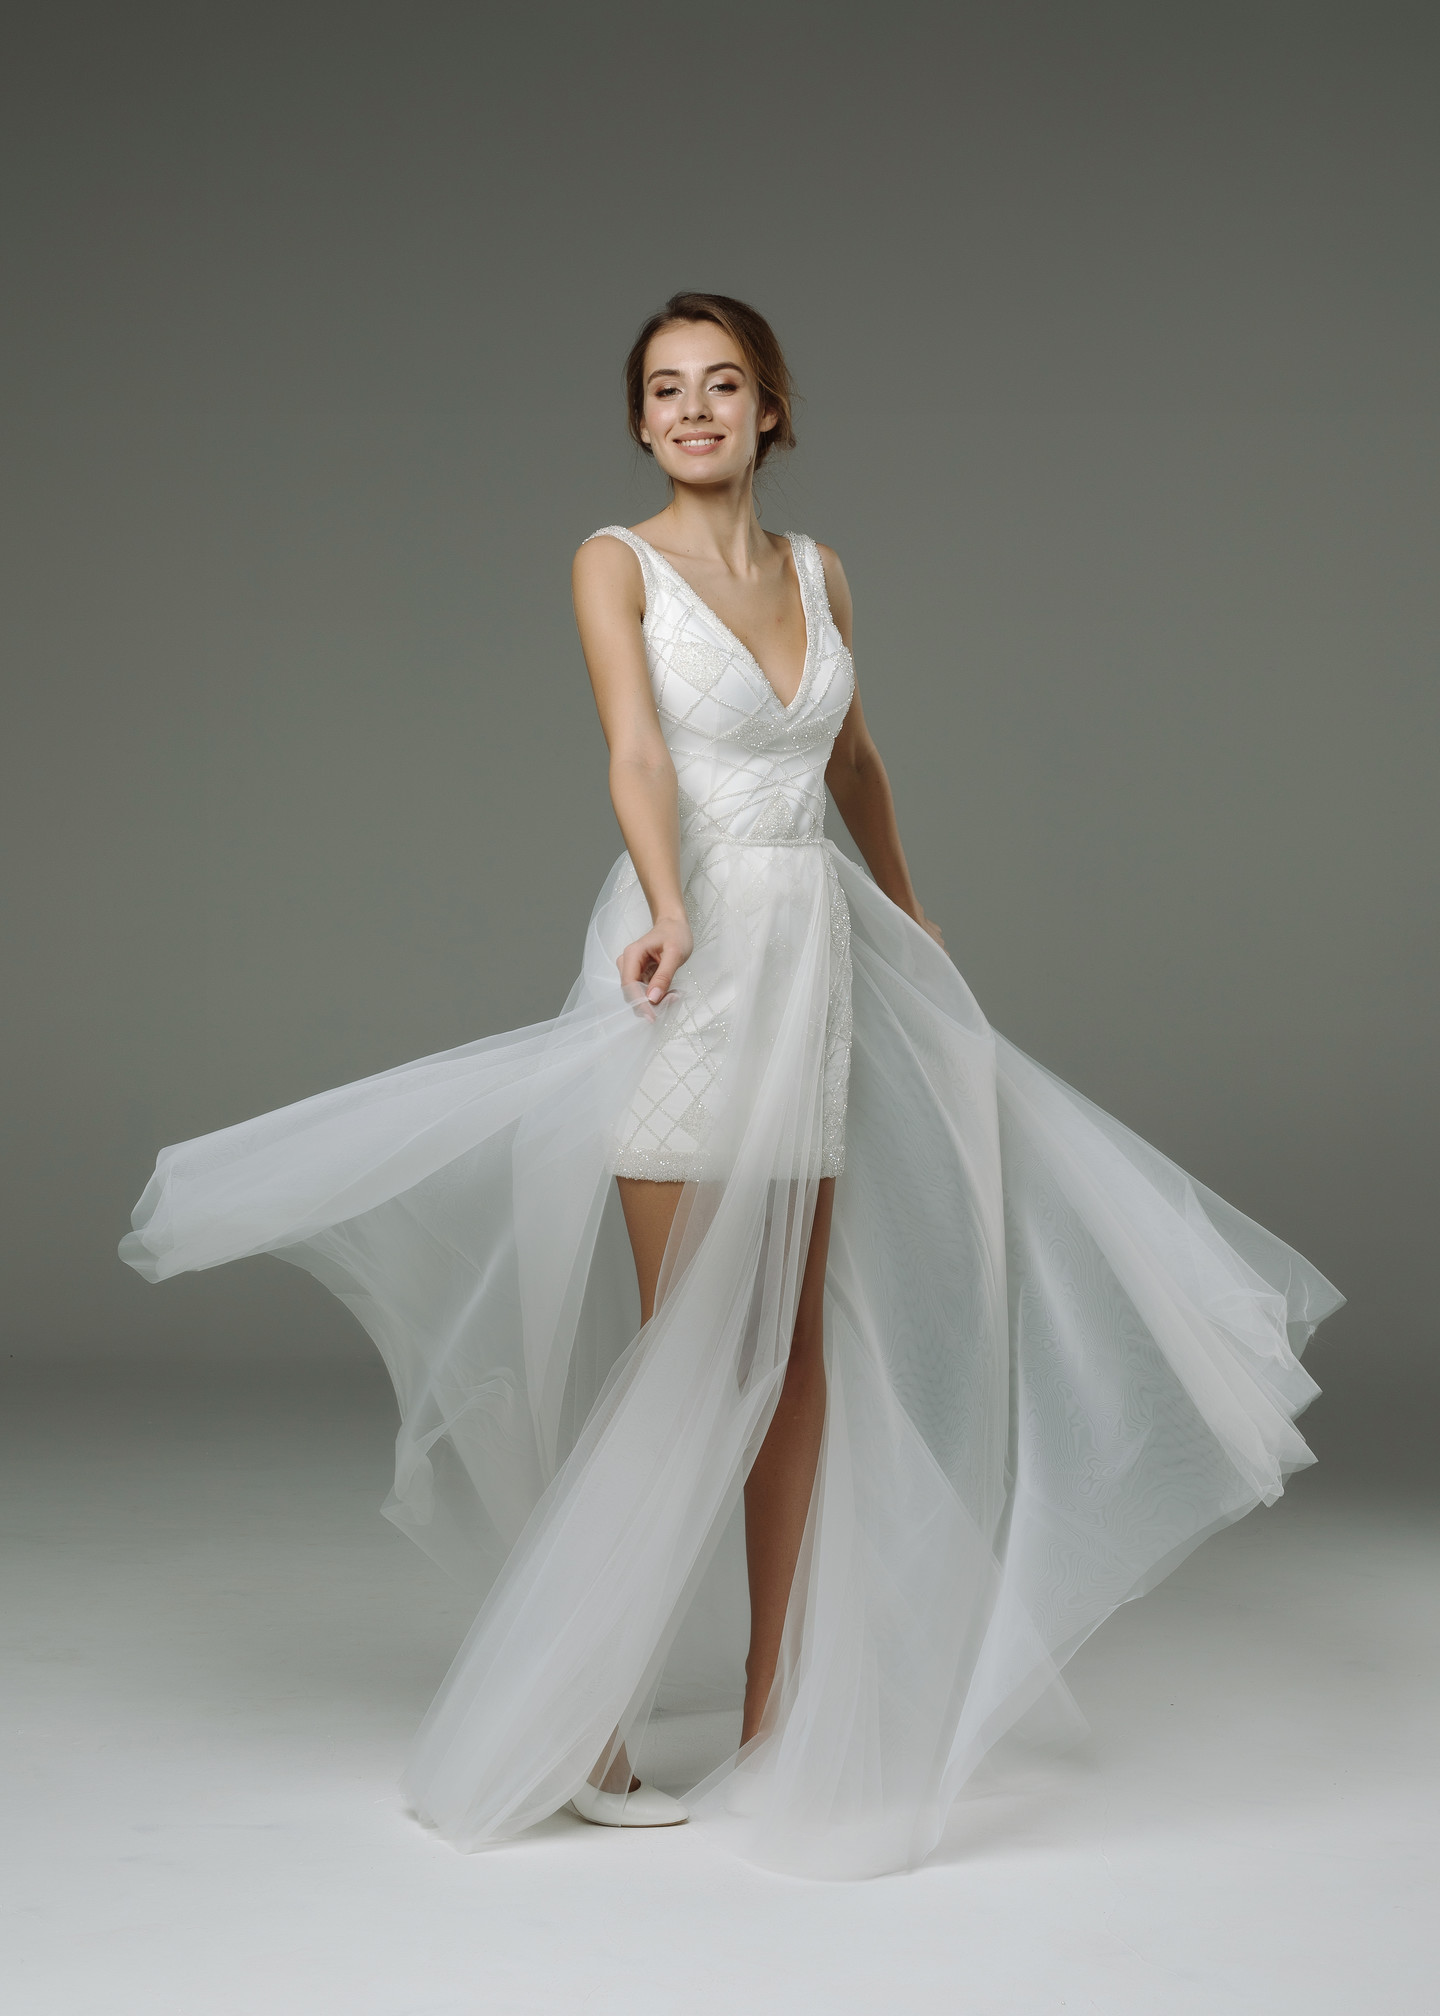 Платье Селестина, 2019, одежда, платье, свадебное, молочно-белый, прямой силуэт, вышивка, популярное